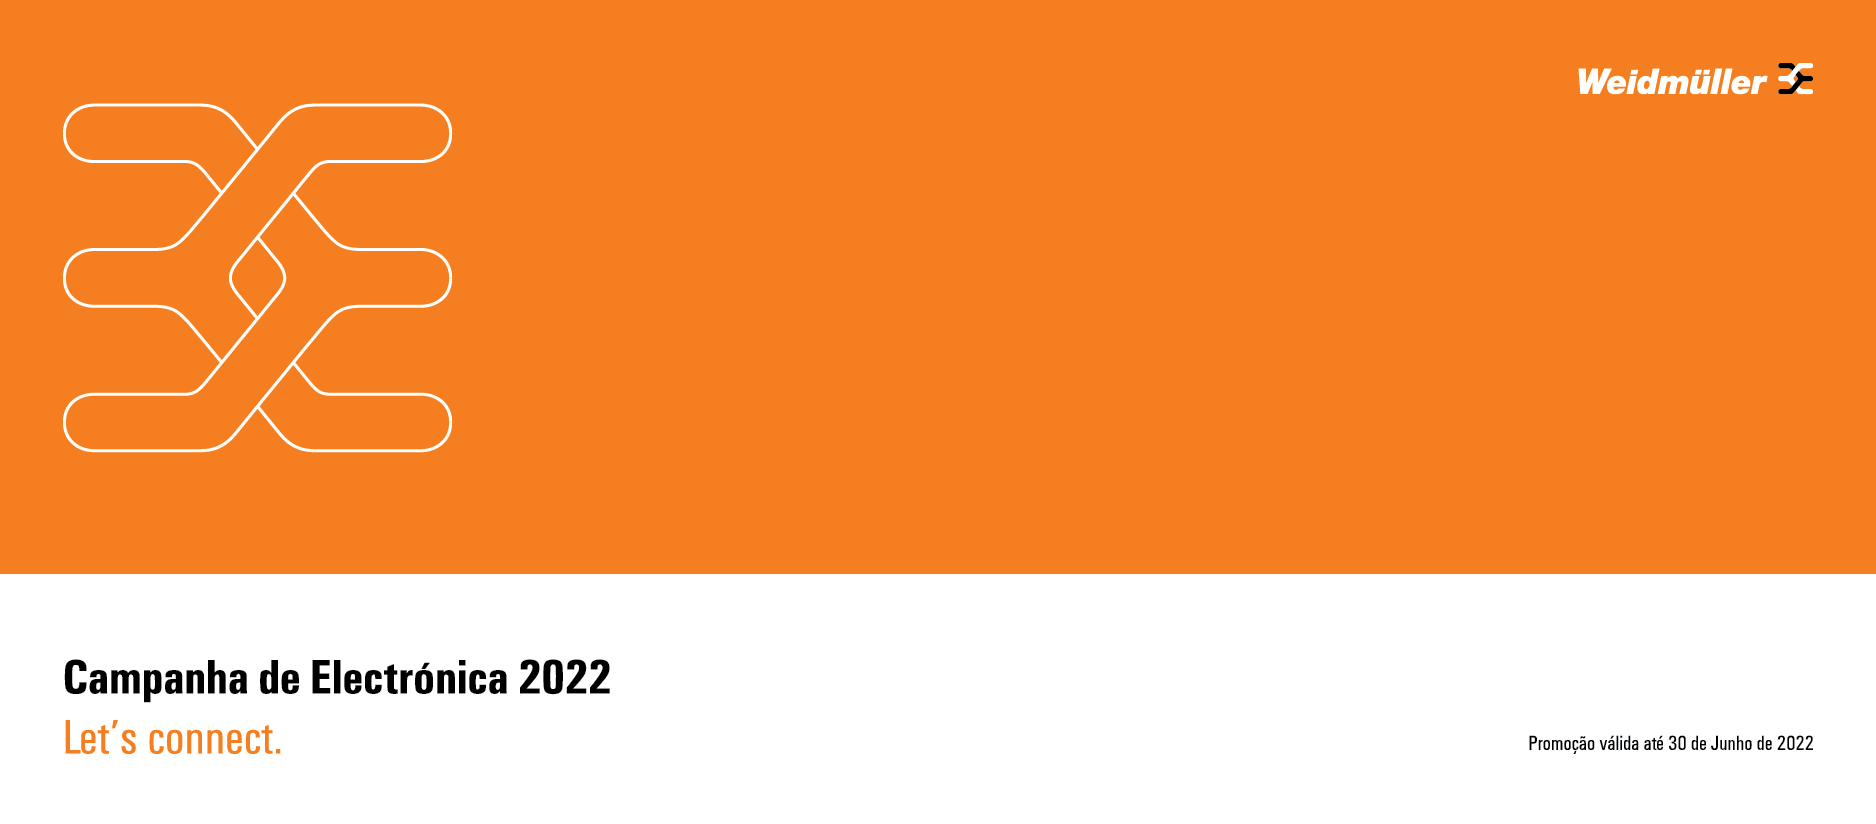 Campanha de Electrónica 2022